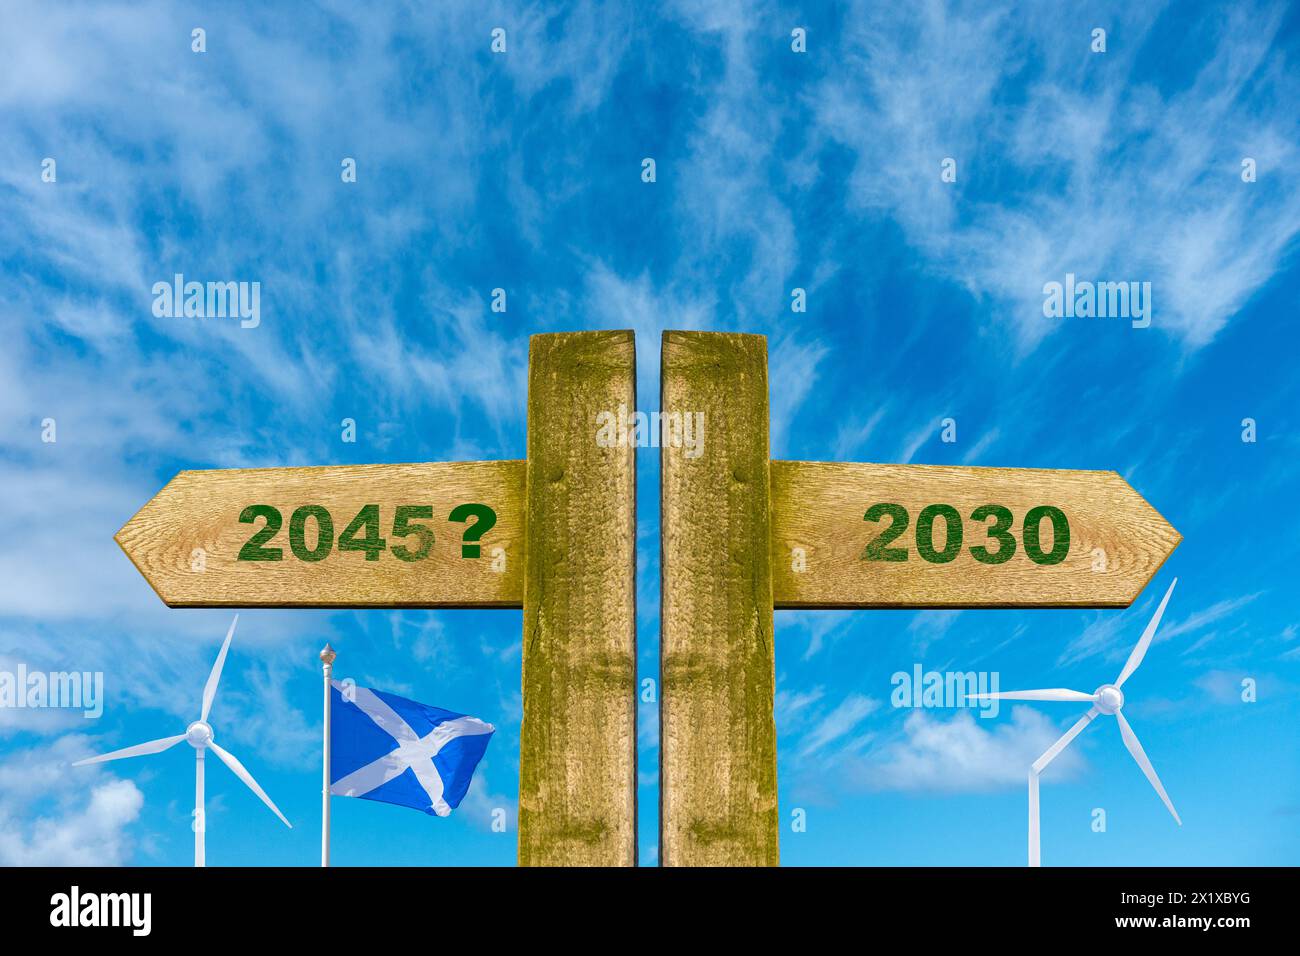 Scozia 2030, 2045 zero netto, impegno sulle emissioni di carbonio, energia rinnovabile Foto Stock